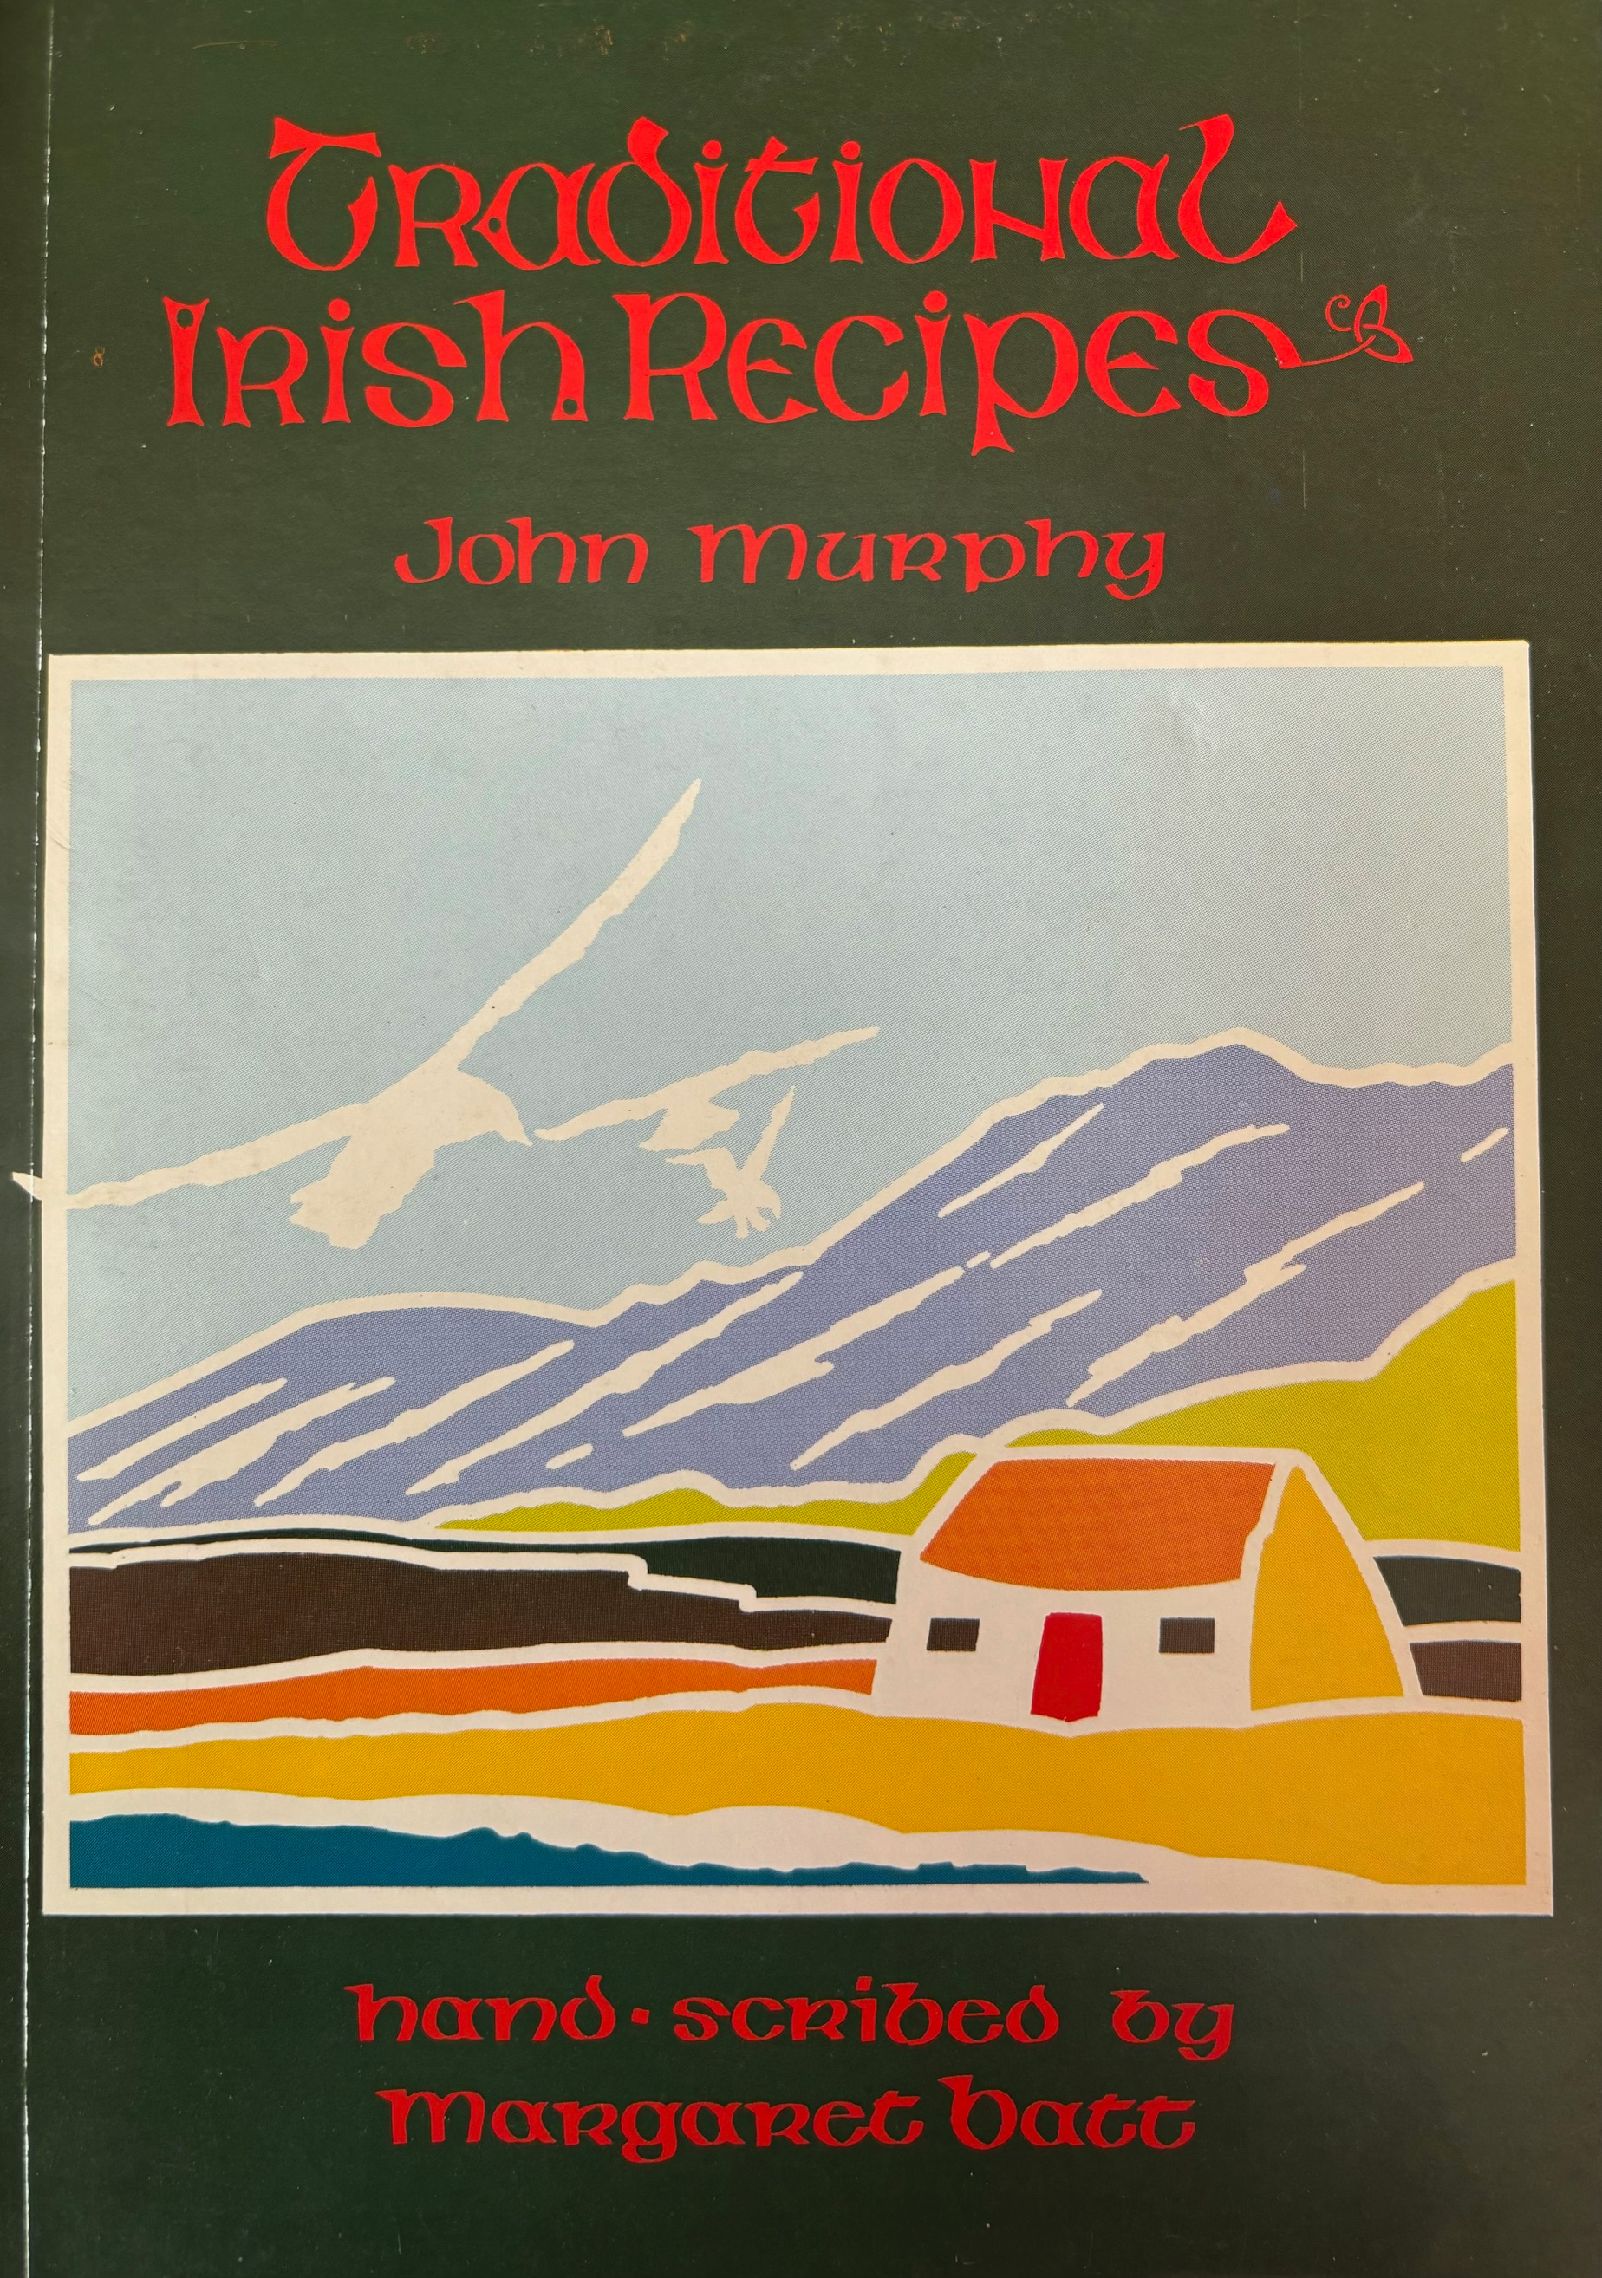 (Irish) John Murphy. Traditional Irish Recipes